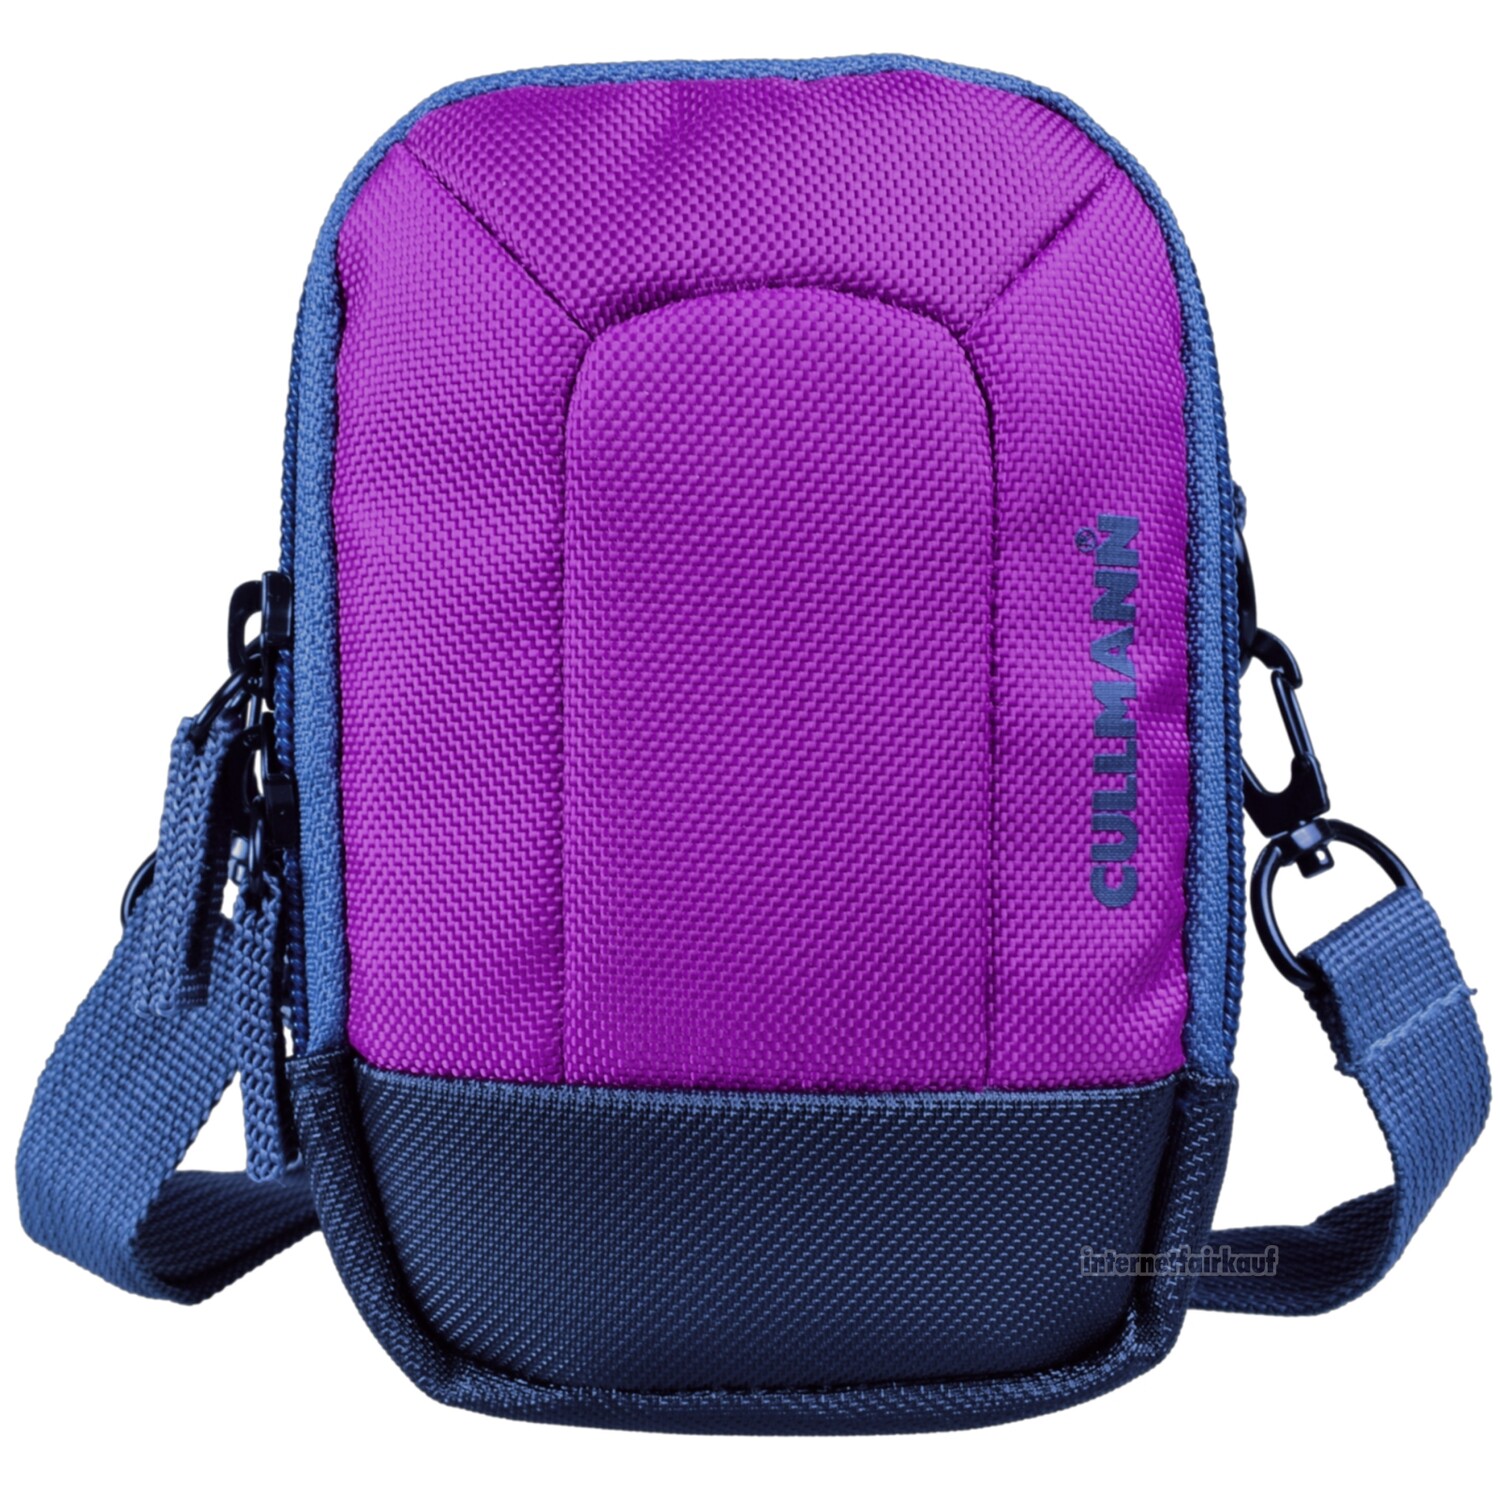 Kameratasche purple passend für Canon PowerShot SX740 HS - Fototasche